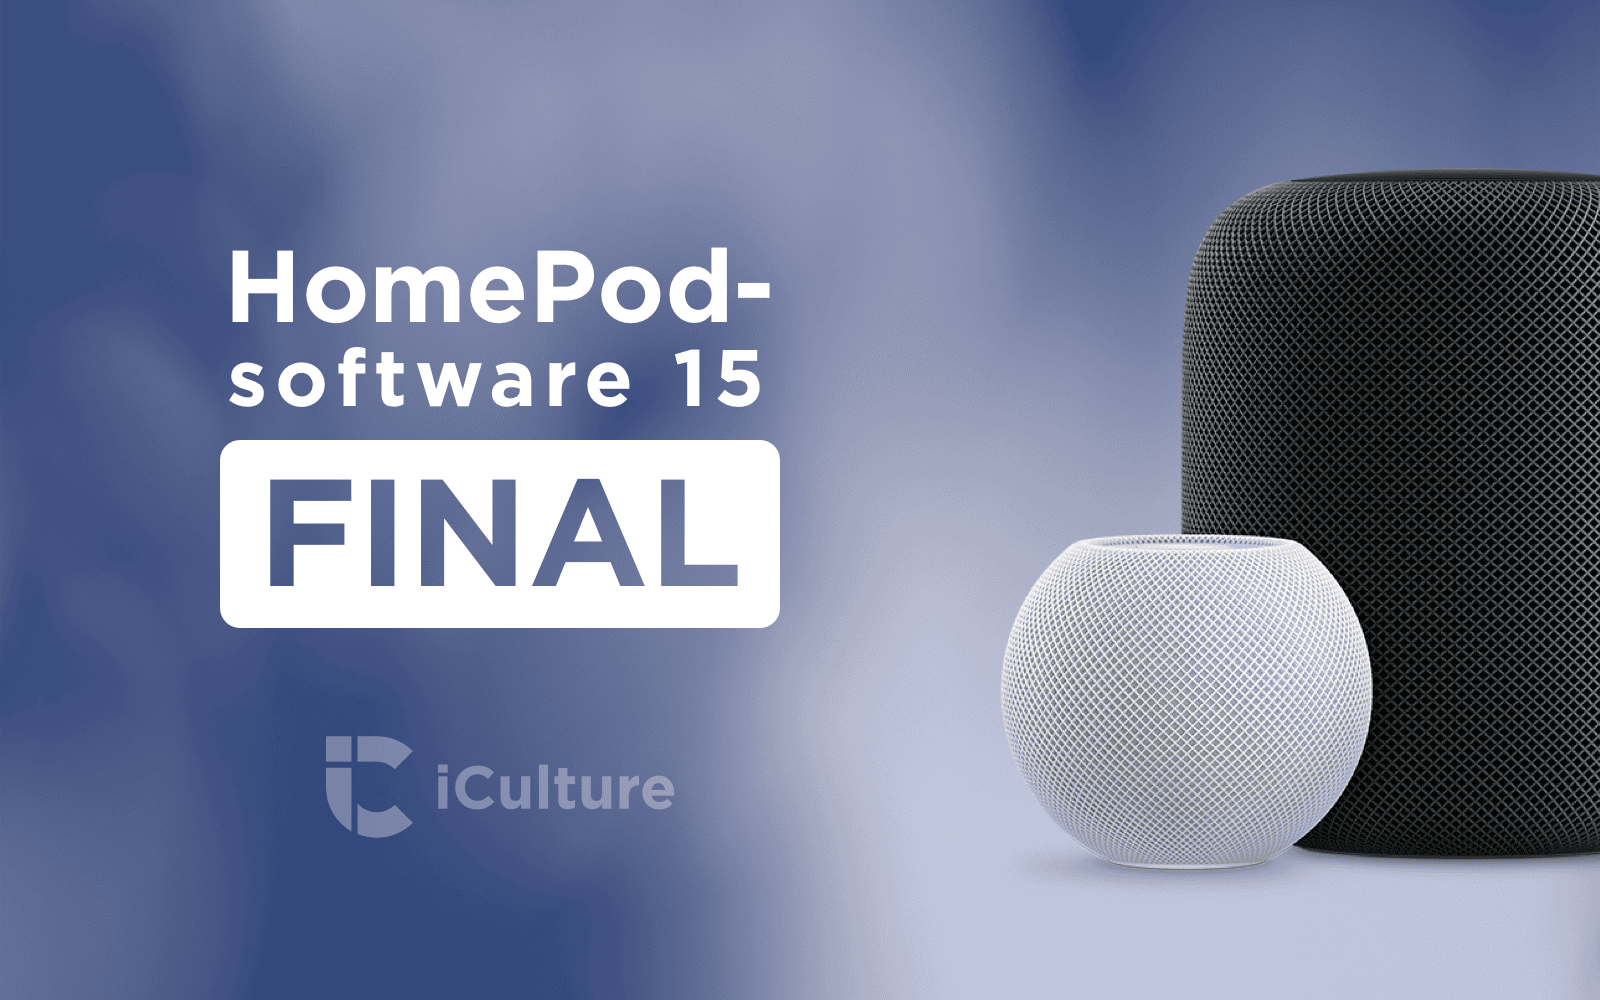 HomePod software-update 15 Final.